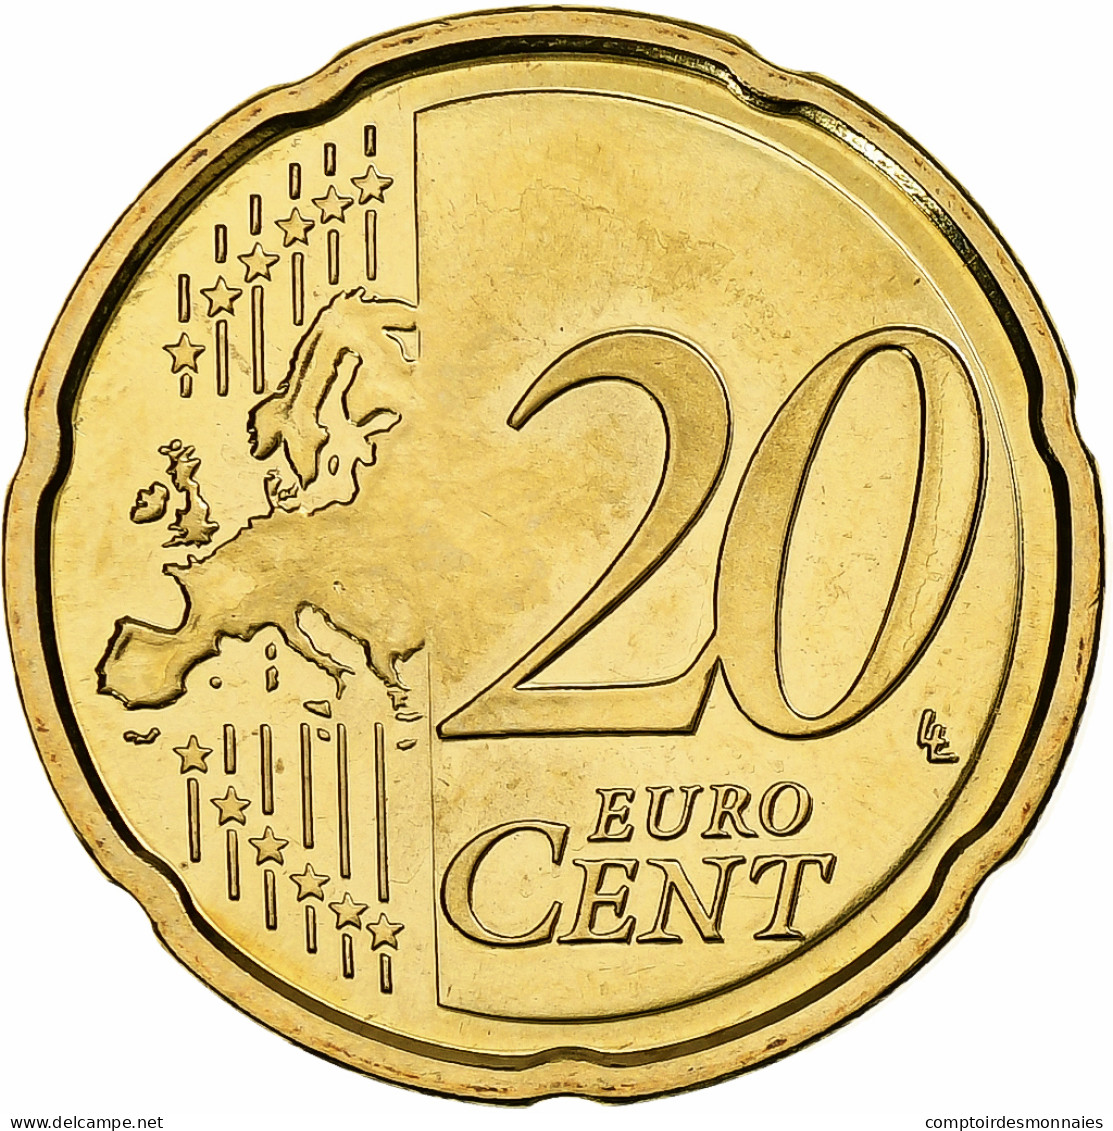 Chypre, 20 Euro Cent, 2009, Laiton, FDC, KM:82 - Chypre